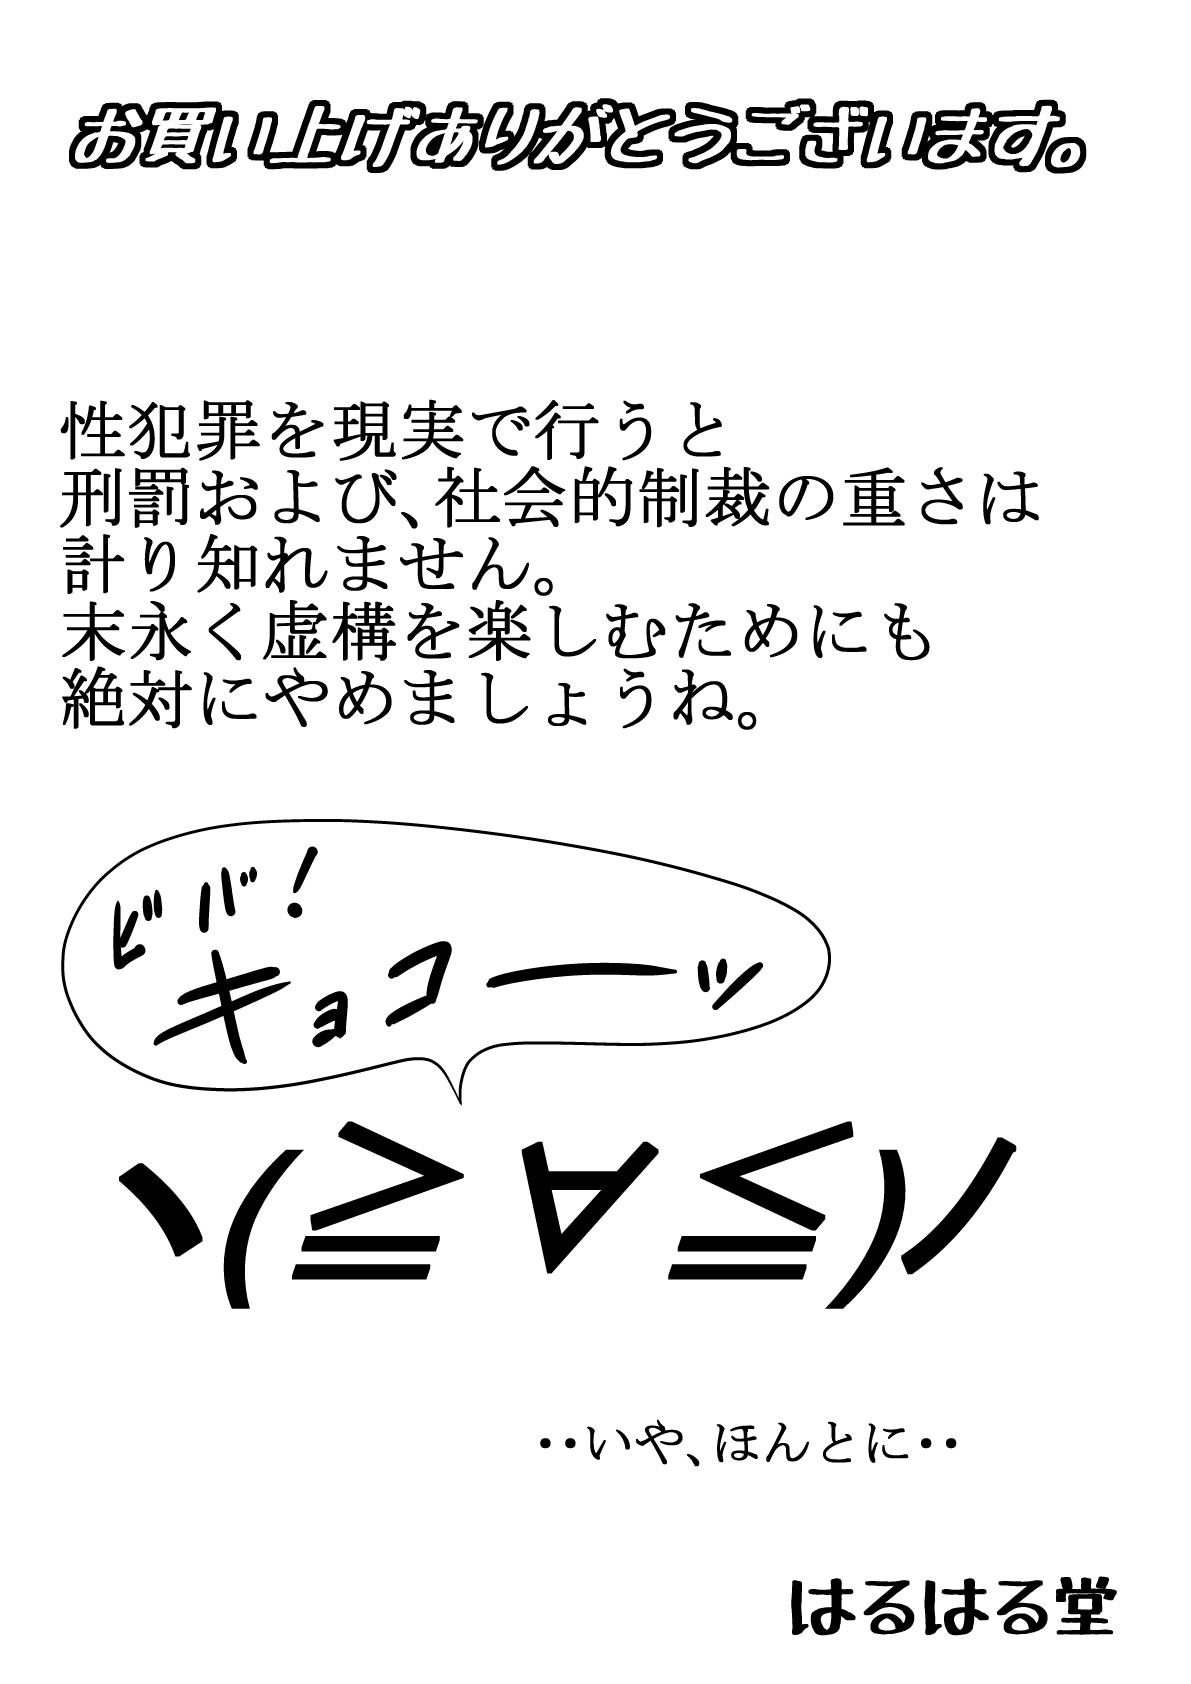 Gemendo Aa, Senpai no Oniku, Yappa Yawarakaissu Vol. 3 Dotado - Page 2